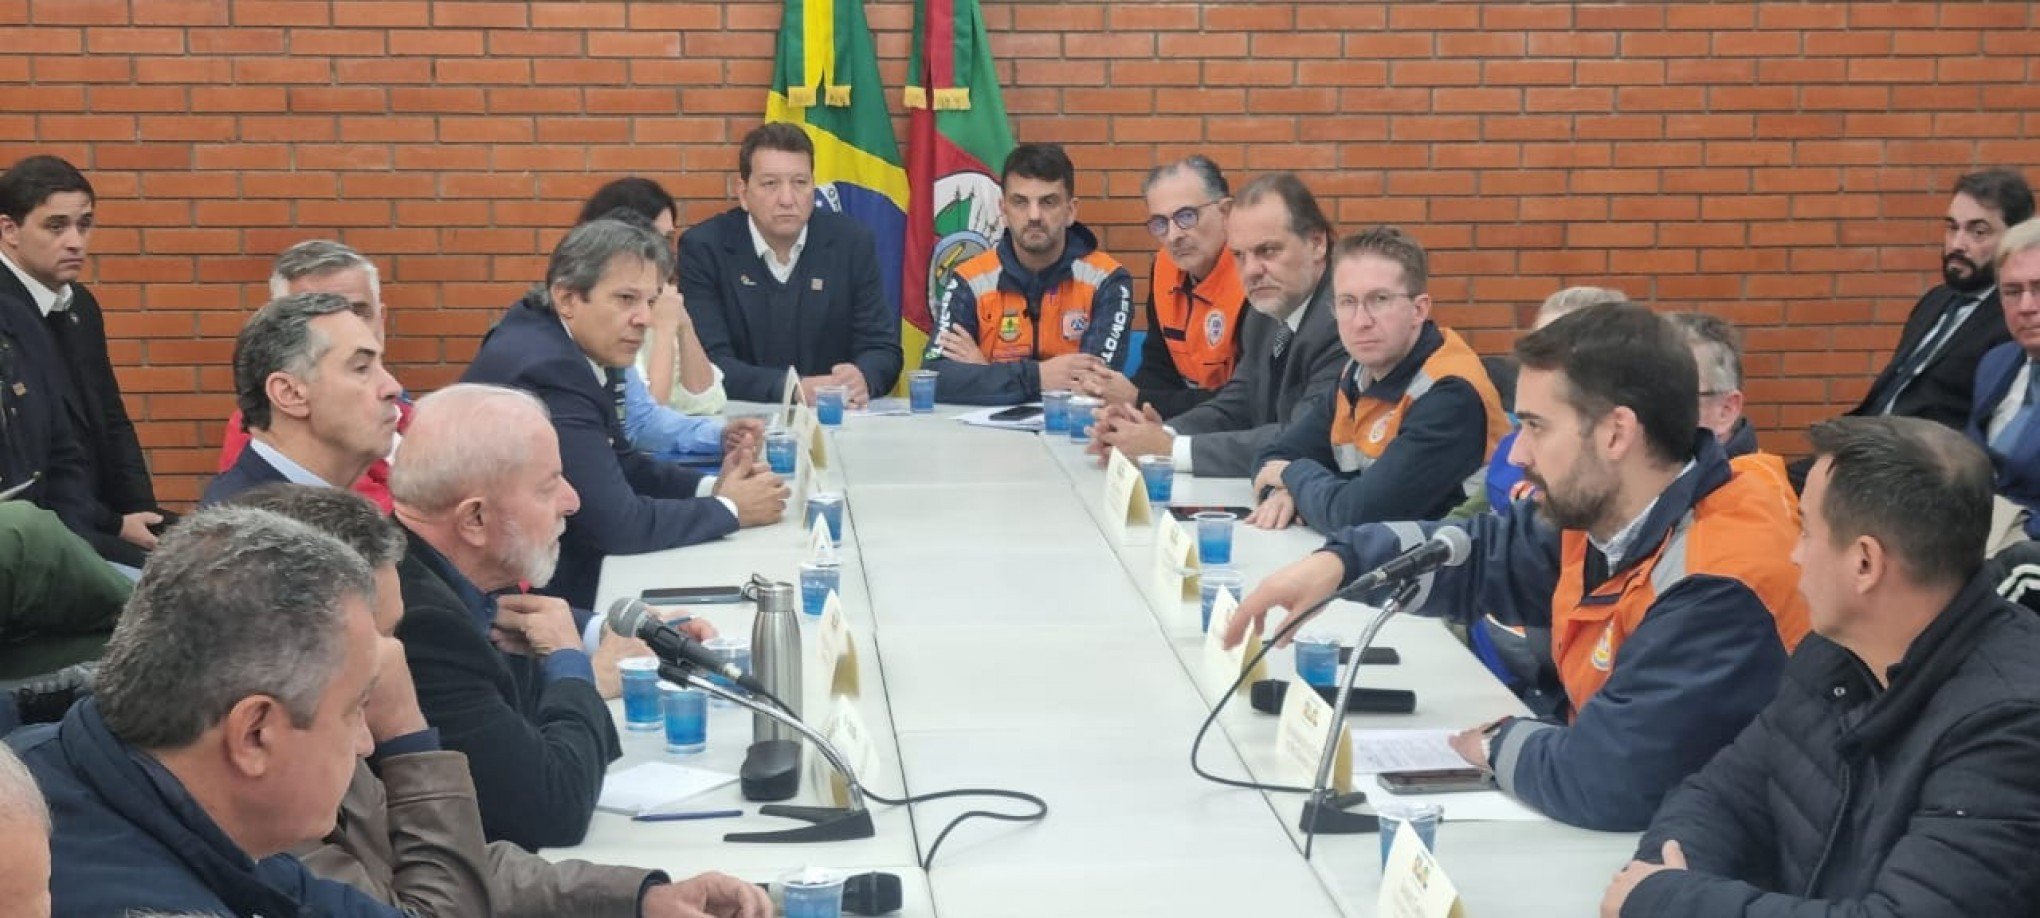 CATÁSTROFE NO RS: Entidades gaúchas aproveitam visita de Lula e fazem pedido ao presidente; confira